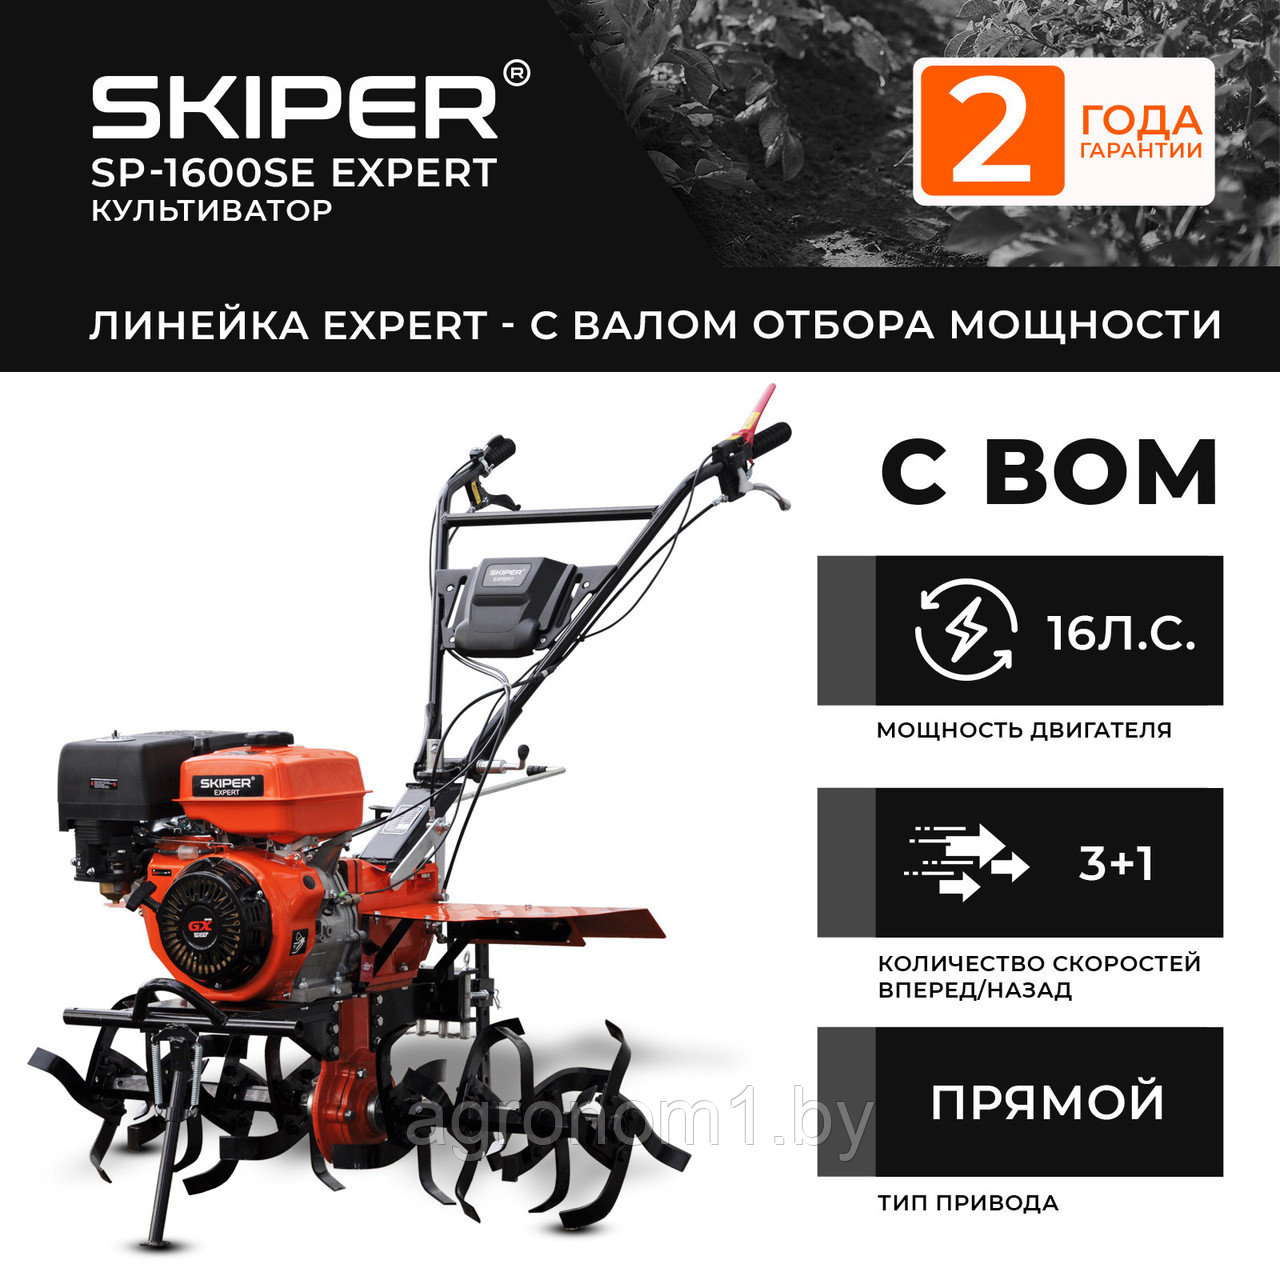 Мотоблок SKIPER SP-1600SE Expert (16 лс, с ВОМ ф18х20, повор.ступицы, 3+1, 2 год.гарант, без колёс)